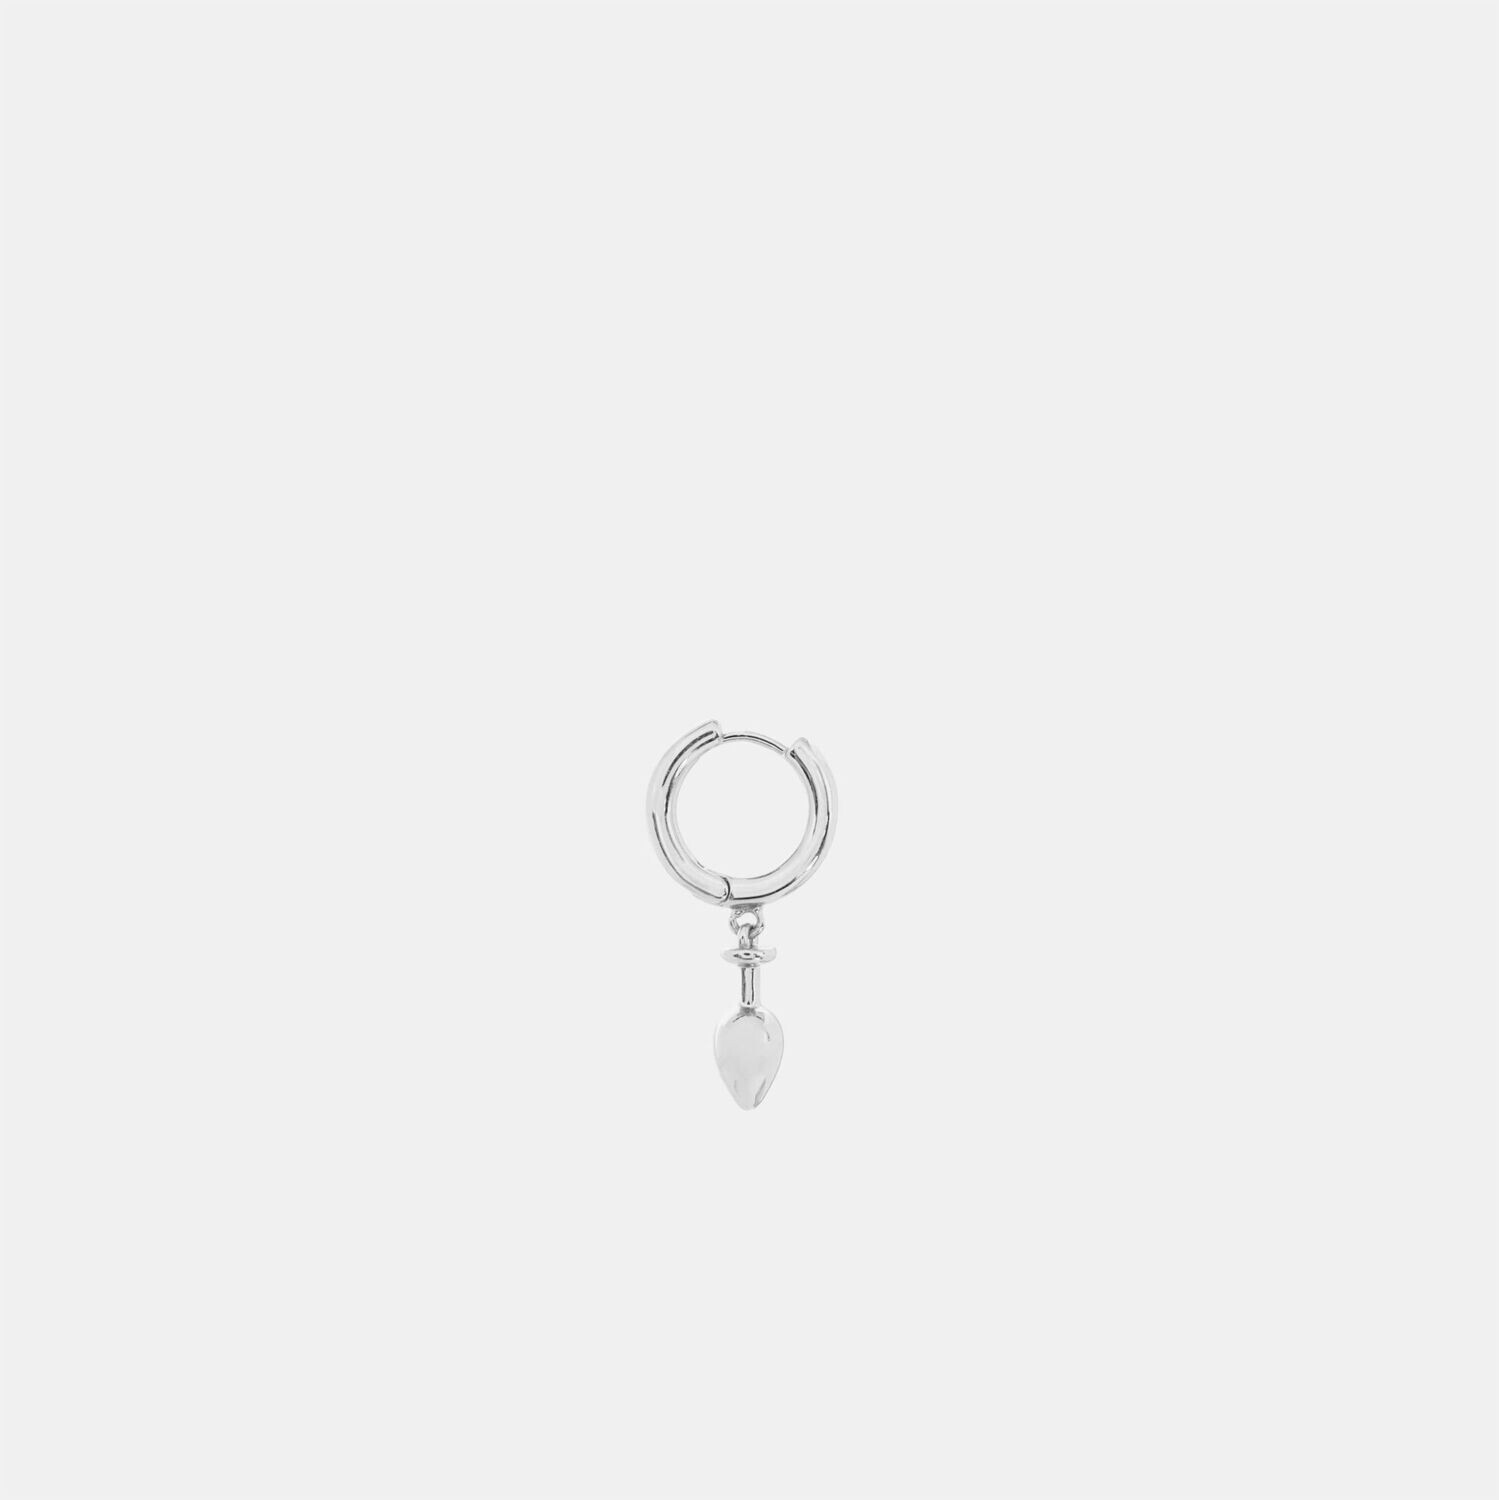 Hoemo World - Butt Plug Drop Hoop Earring - Silver